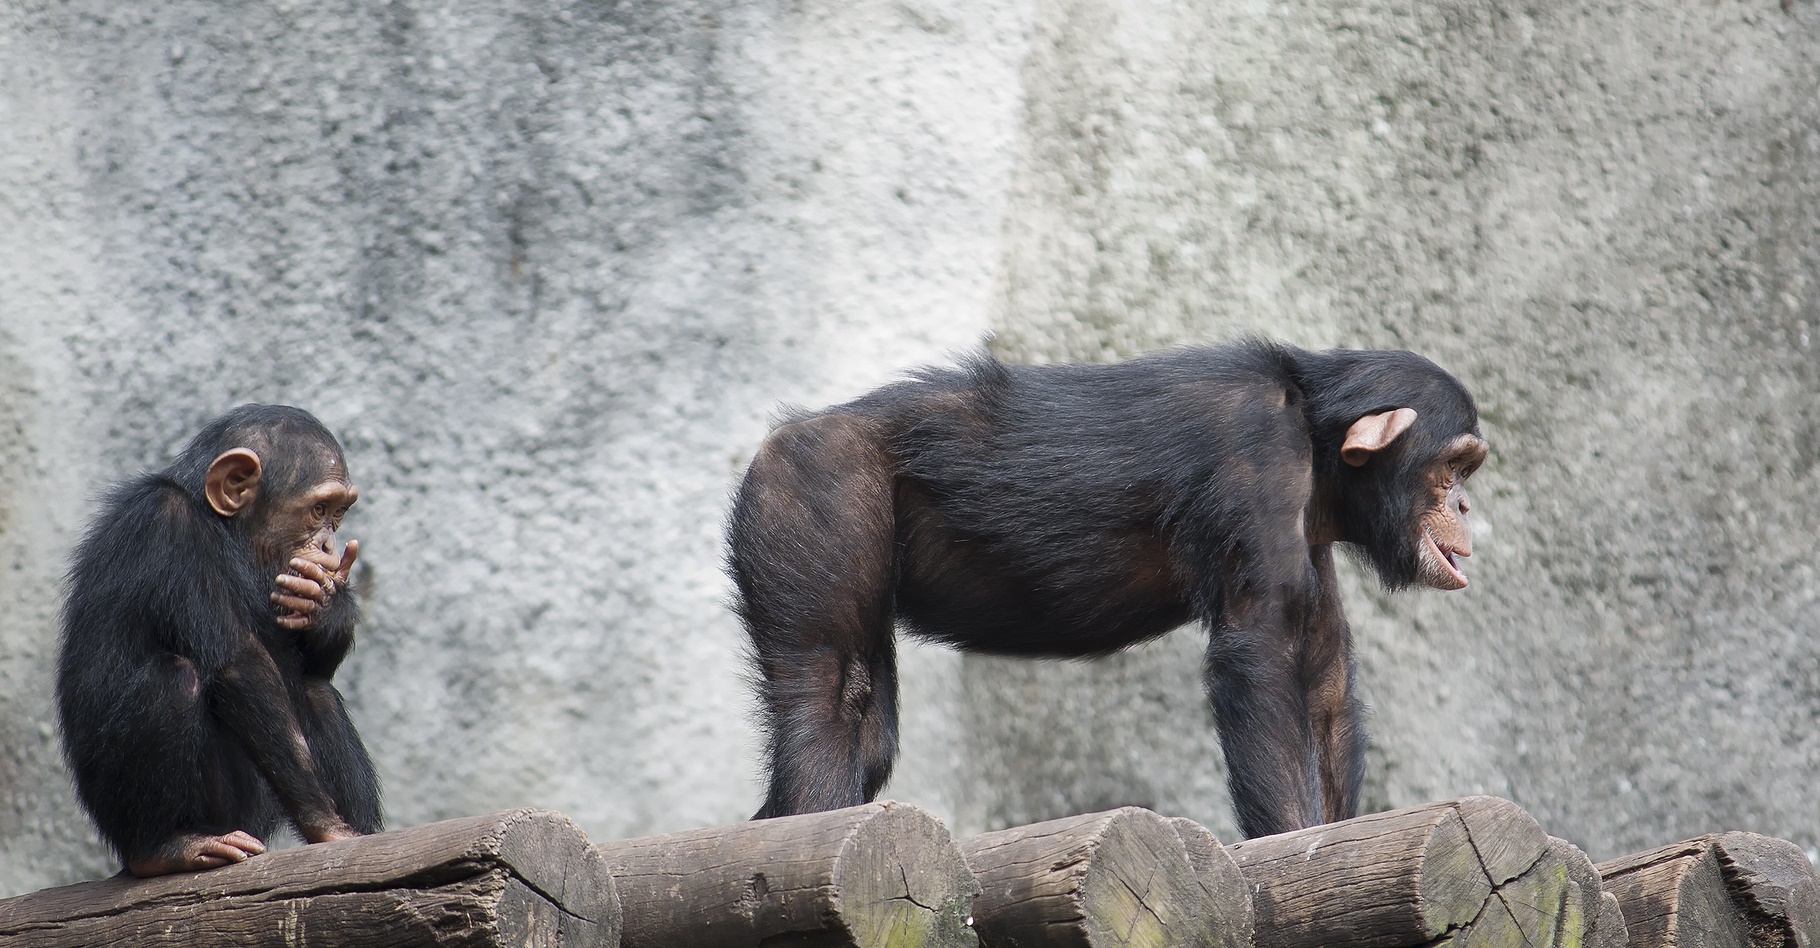 « Montre-moi tes fesses je te dirai quel chimpanzé tu es. » © AJancso, Shuttestock